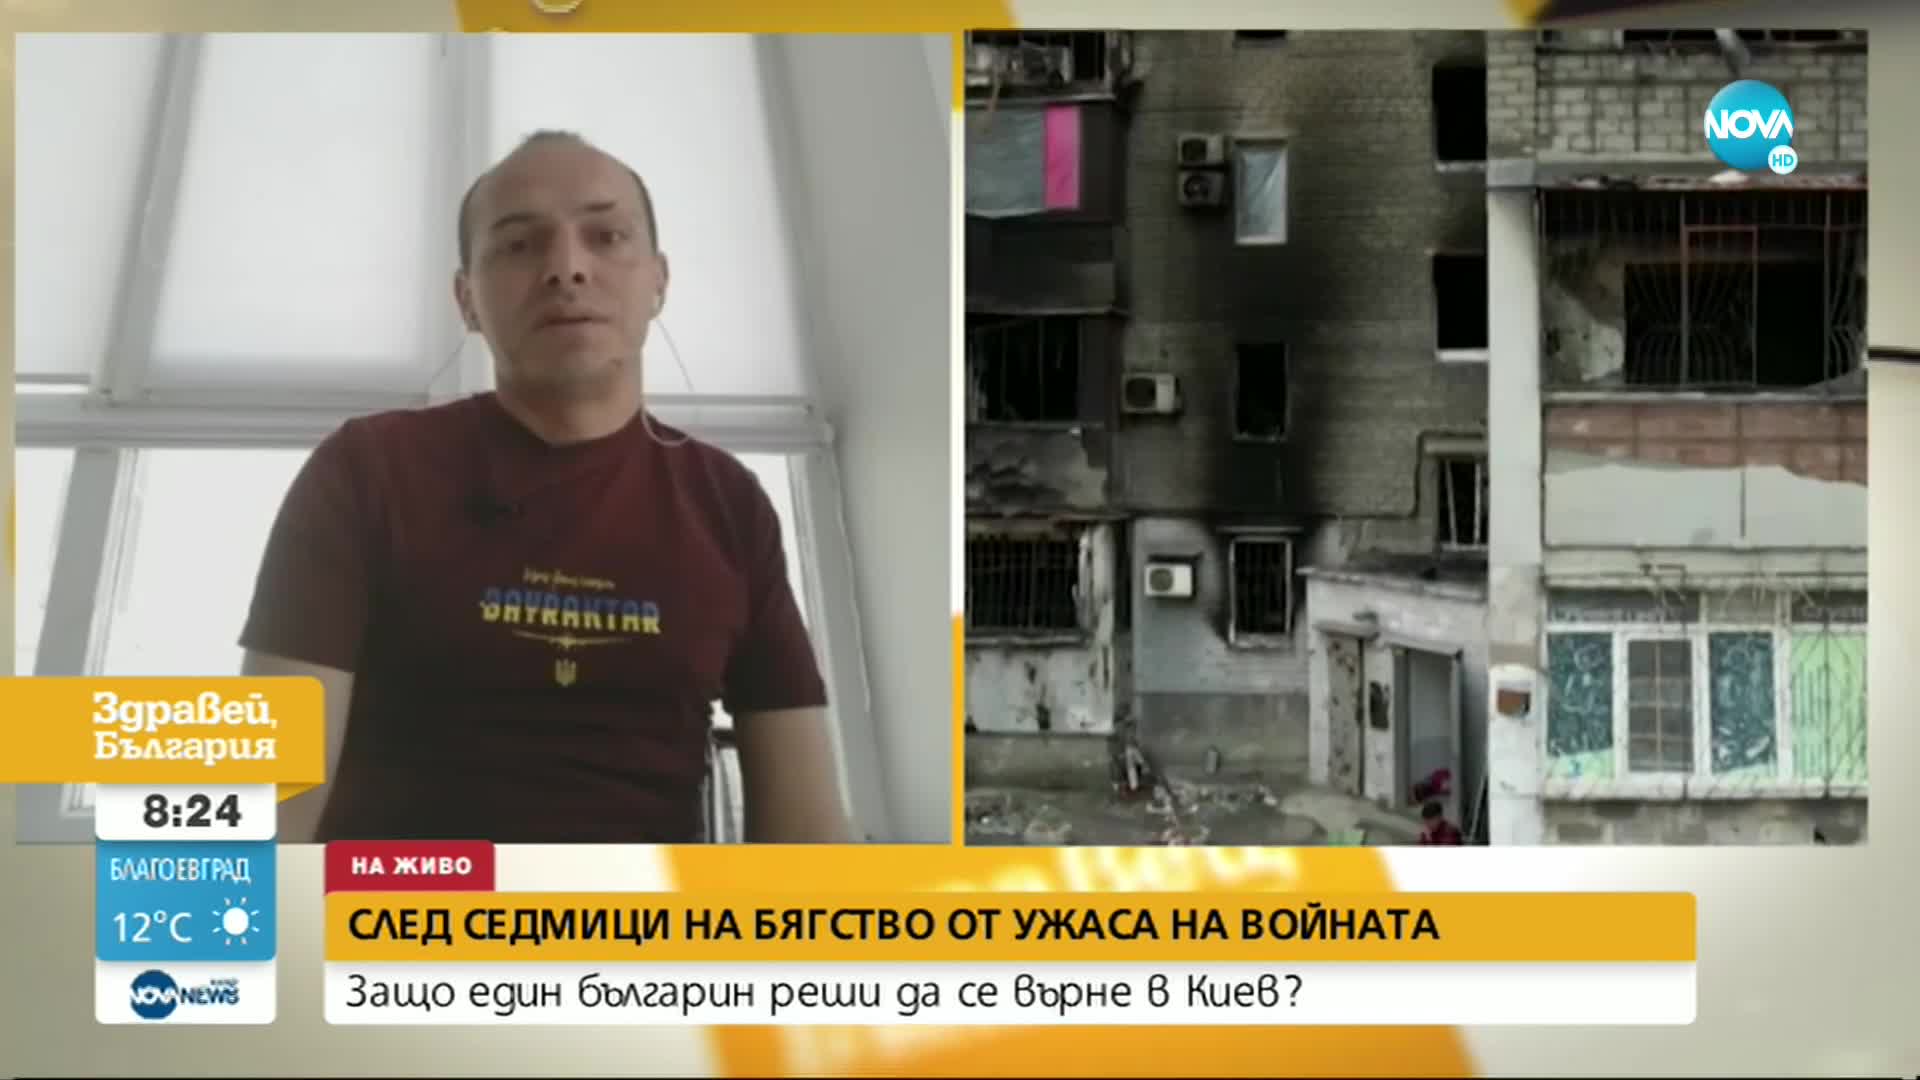 Българин в Киев: Ситуацията в столицата започва да се нормализира